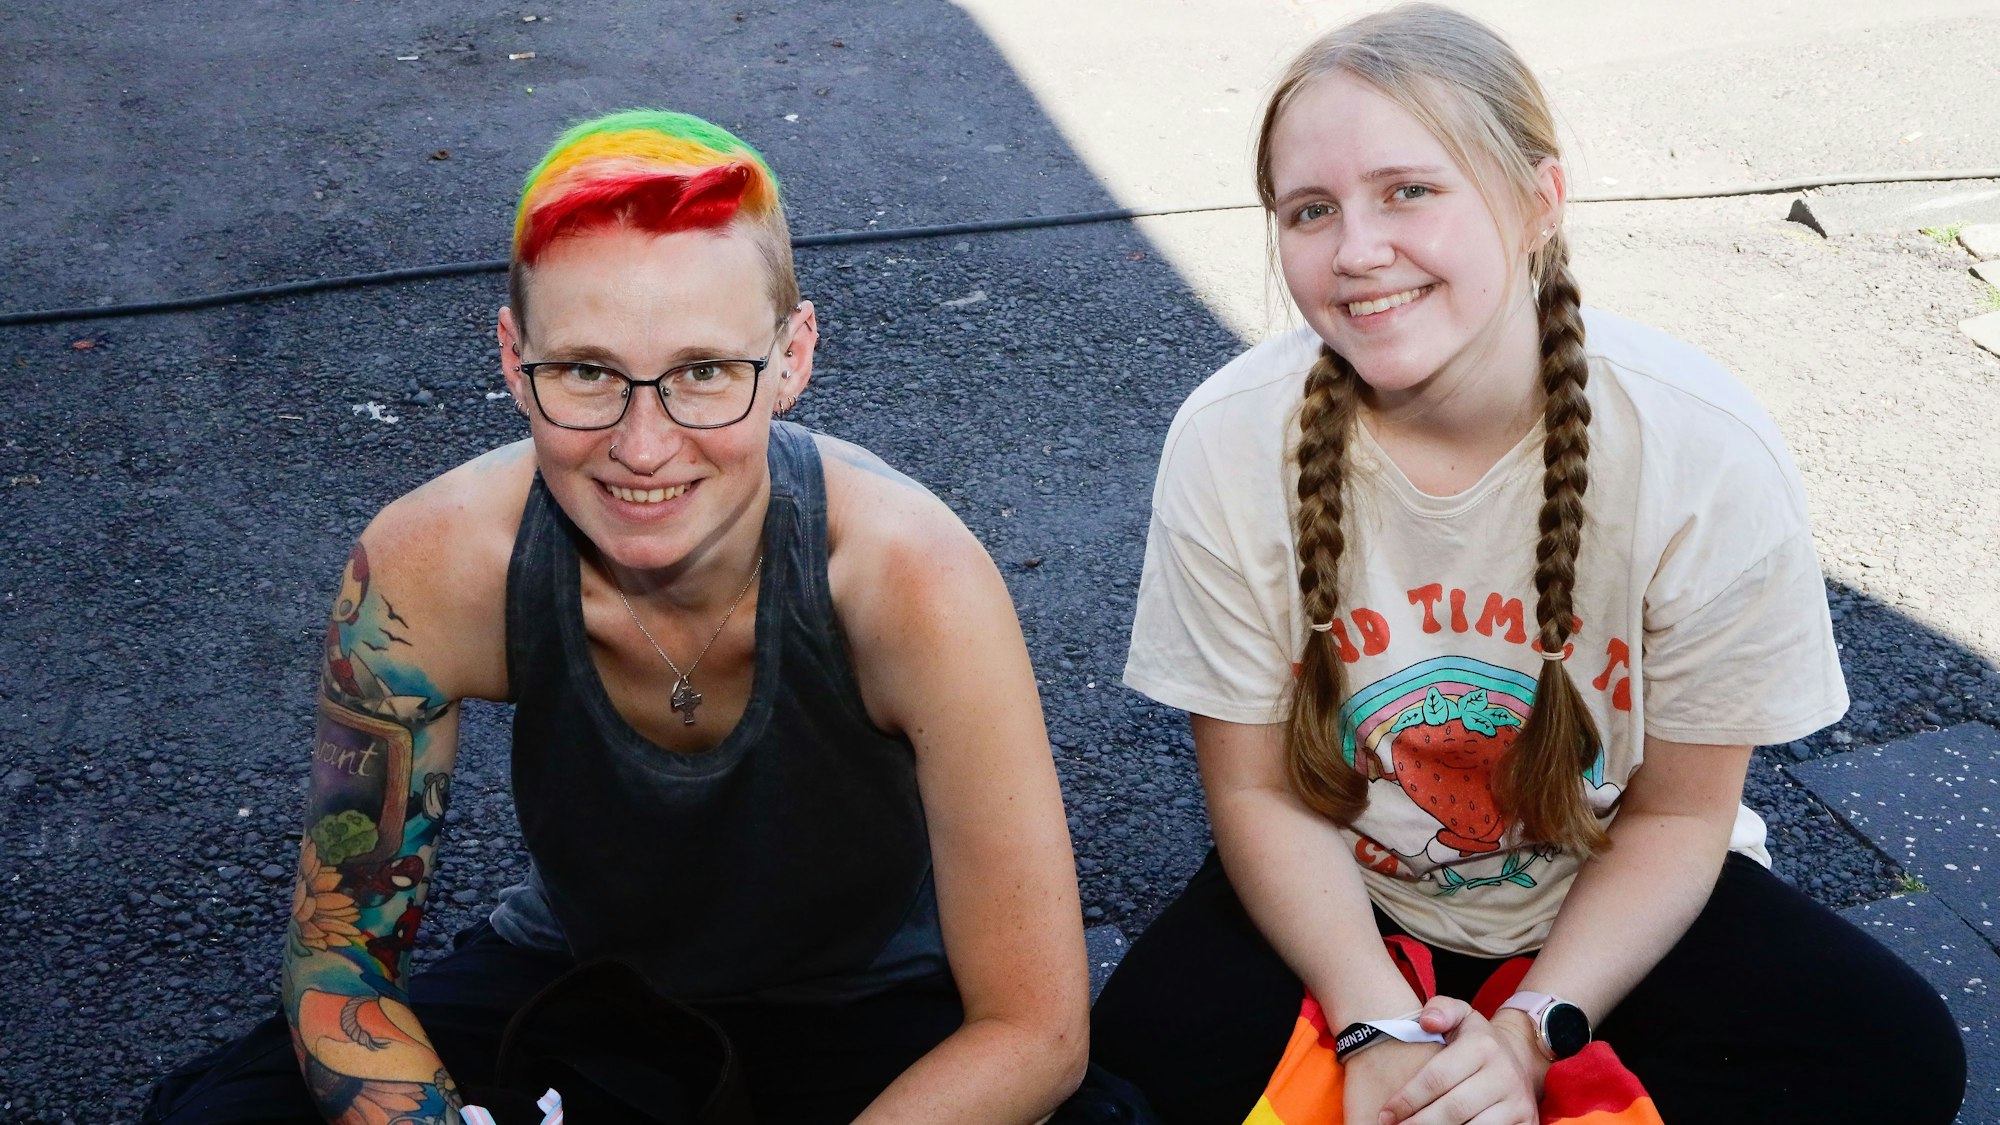 Mel (42) mit ihrer Tochter Liv (18) aus Dortmund beim CSD am Heumarkt. Mel hat sich extra die Haare im Regenbogen-Look gefärbt.